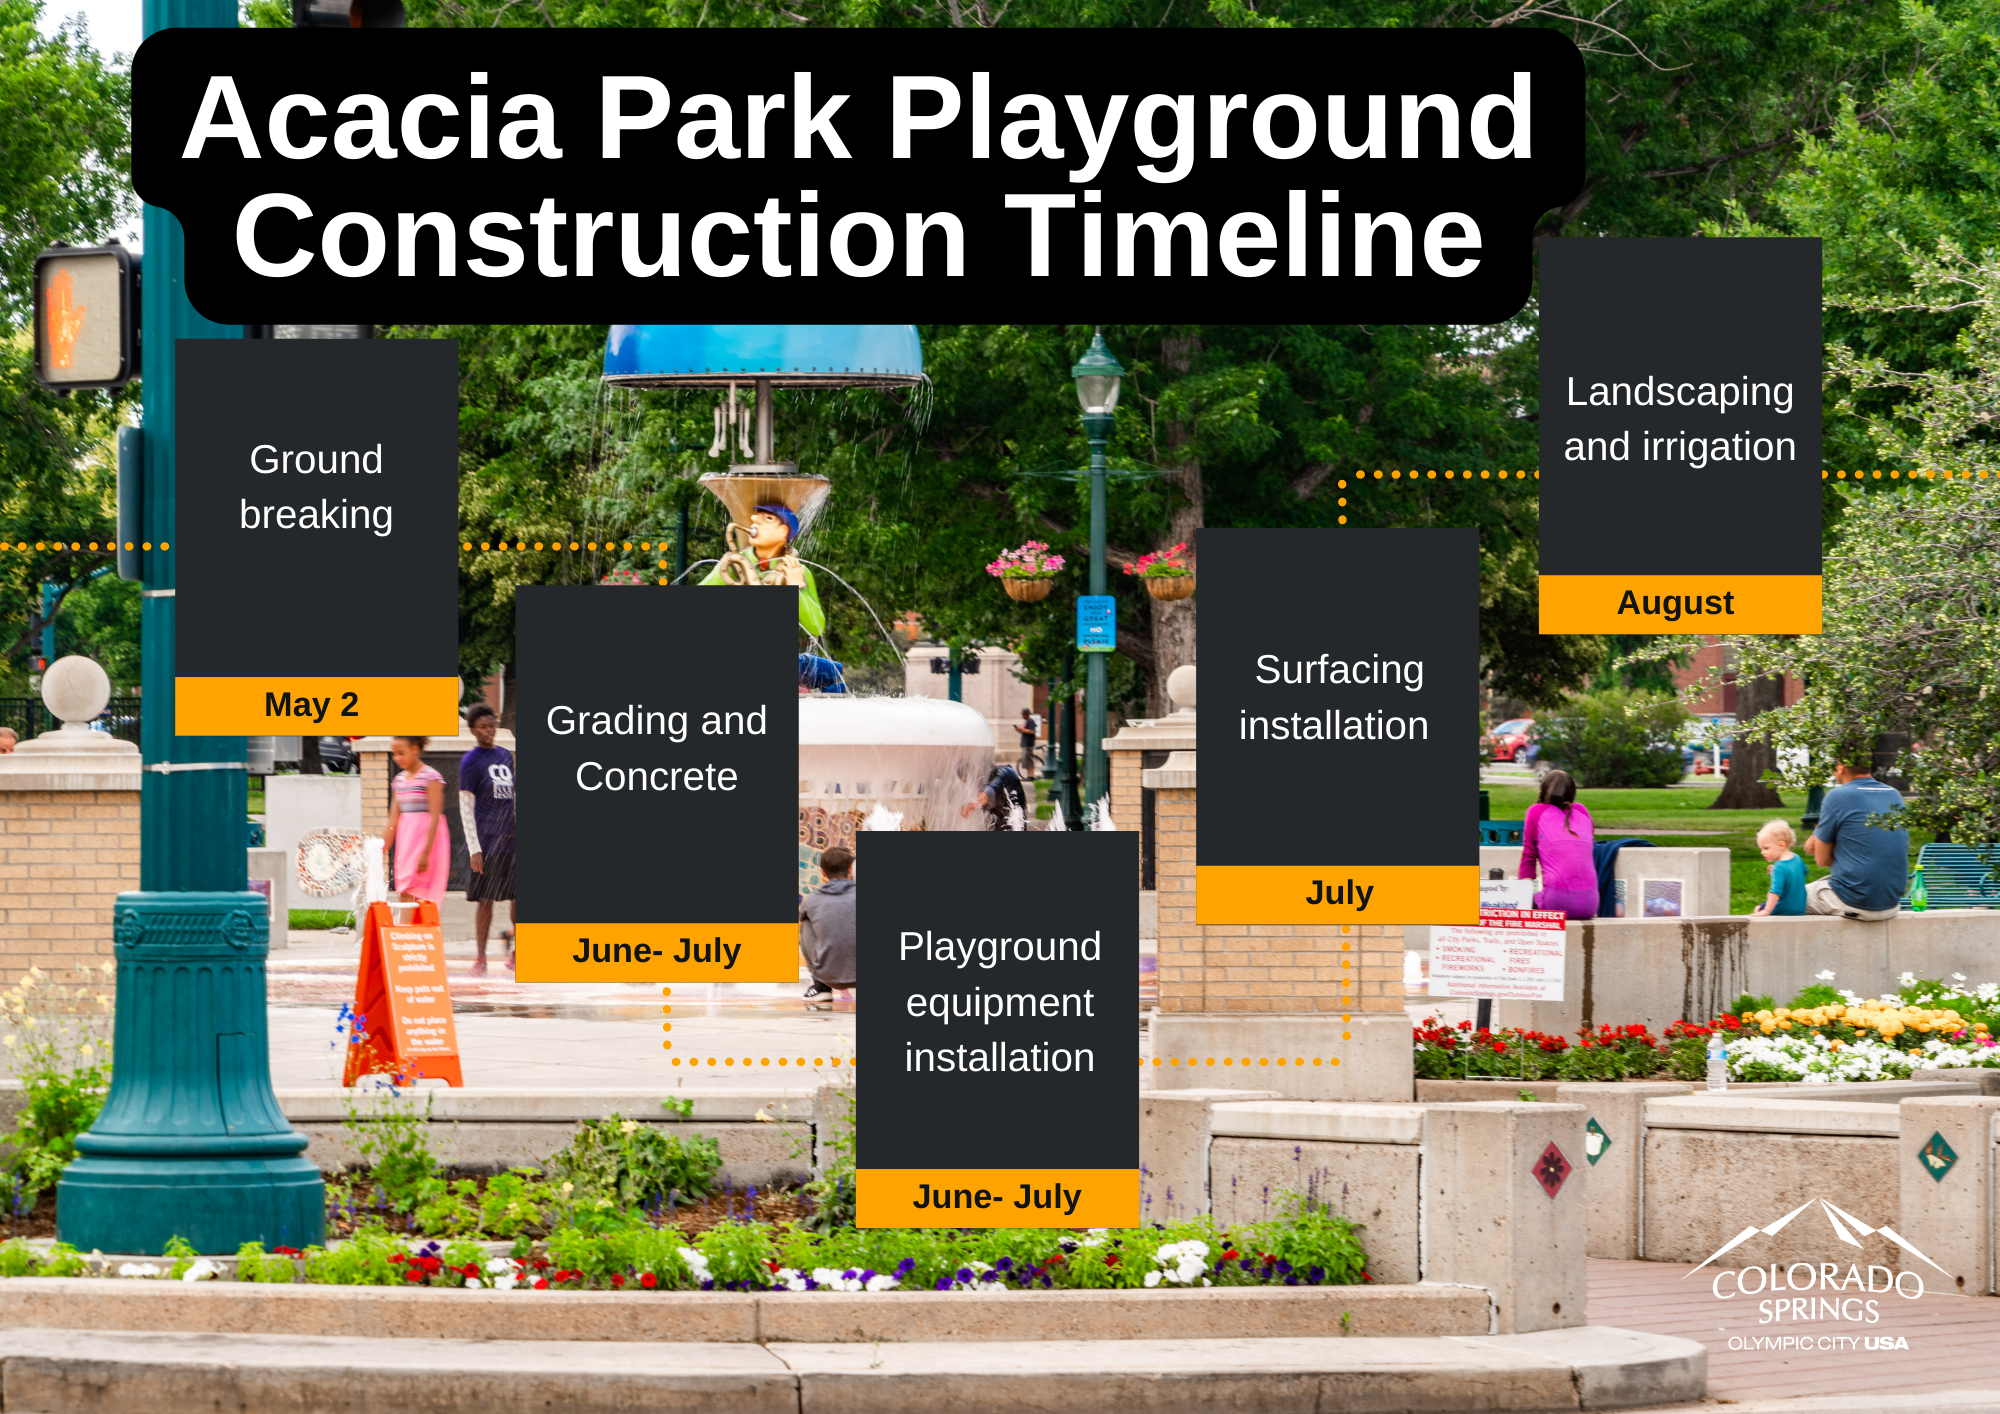 A photo describing the acacia playground progress